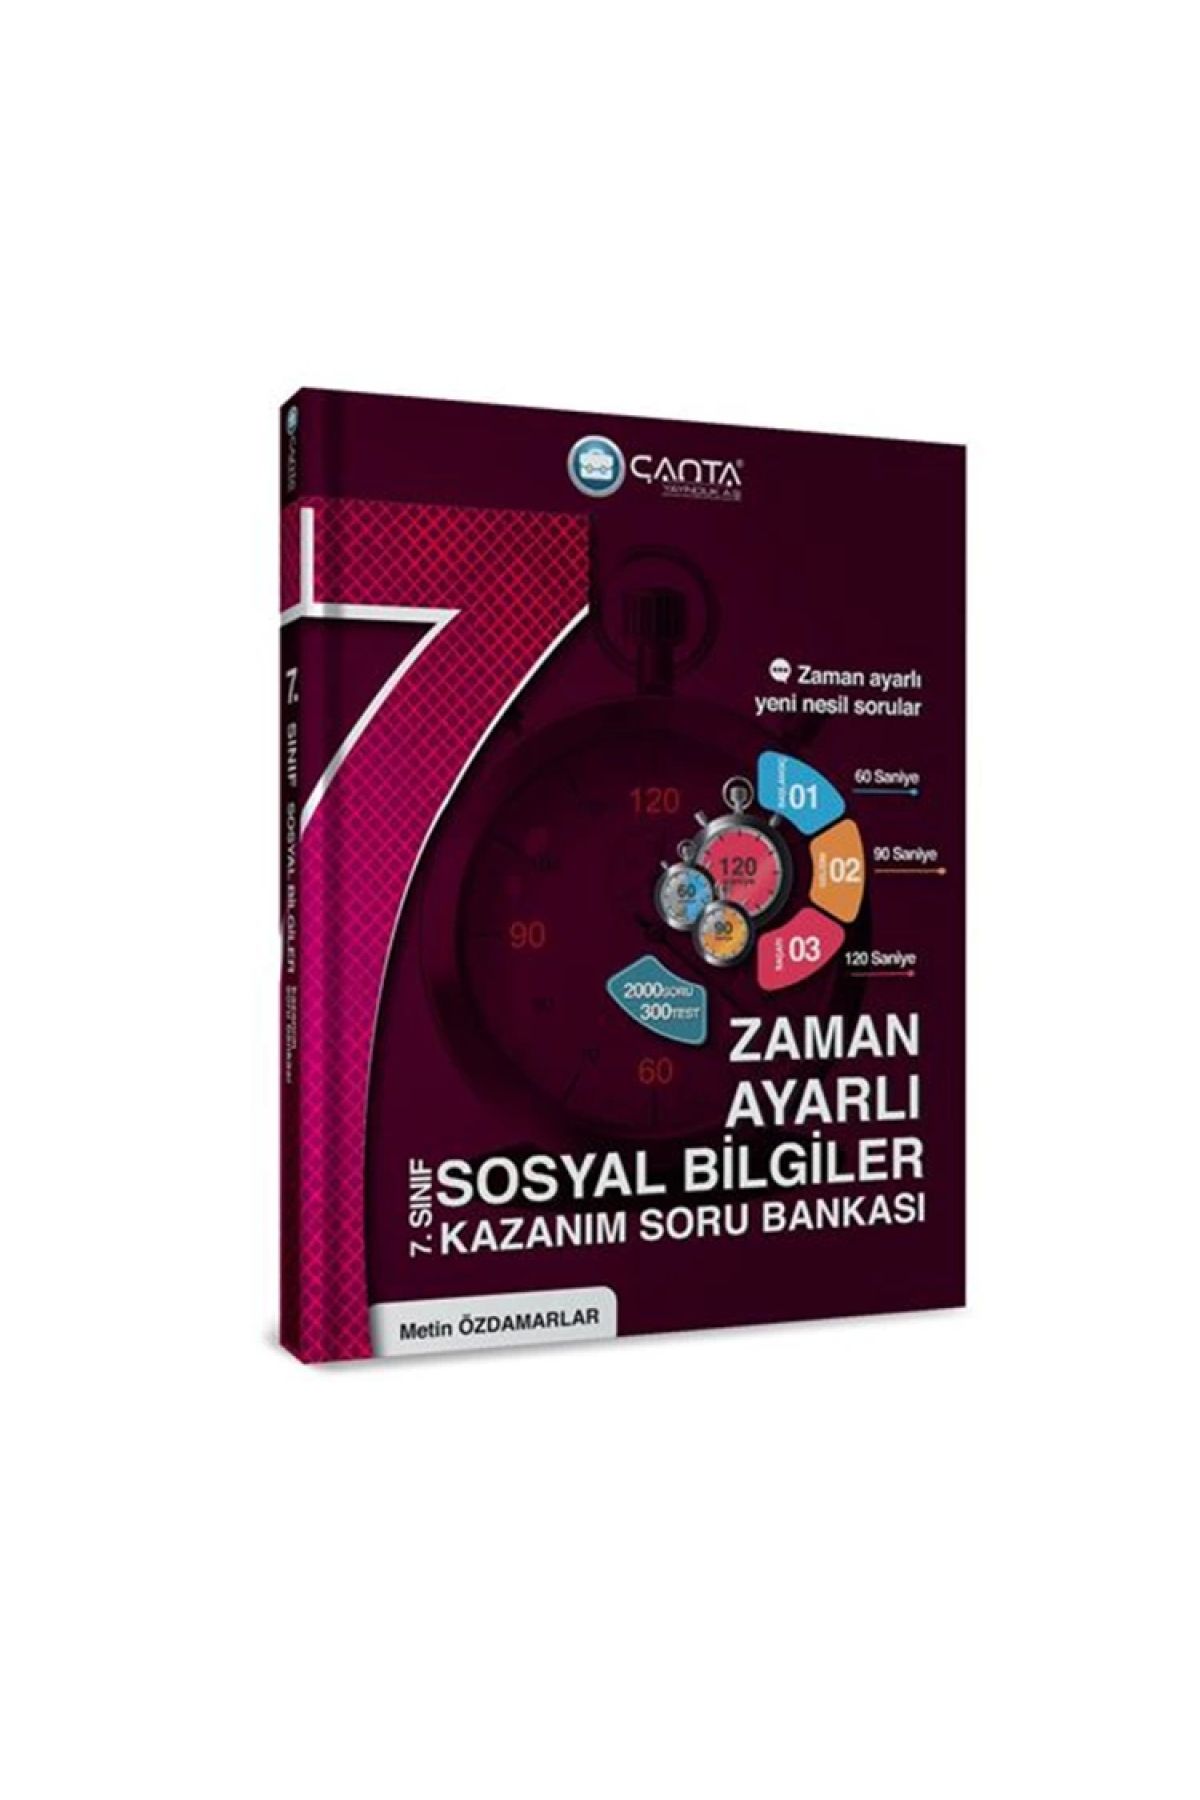 Çanta Yayınları Çanta 7. Sınıf Sosyal Bilgiler Zaman Ayarlı Kazanım Soru Bankası